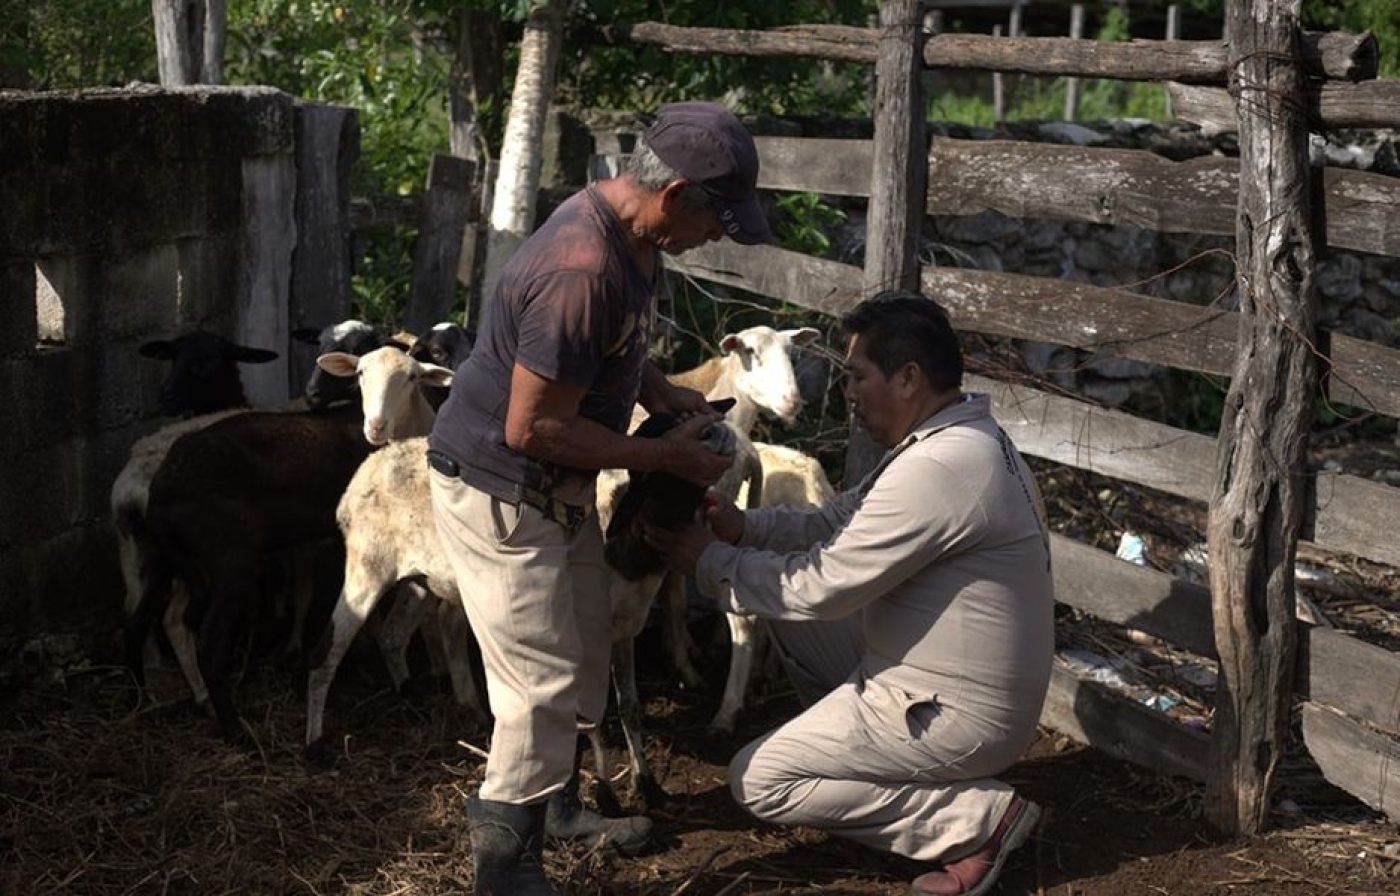 Inicia “Campaña nacional contra la brucelosis en los animales” con toma de muestras a ovinos